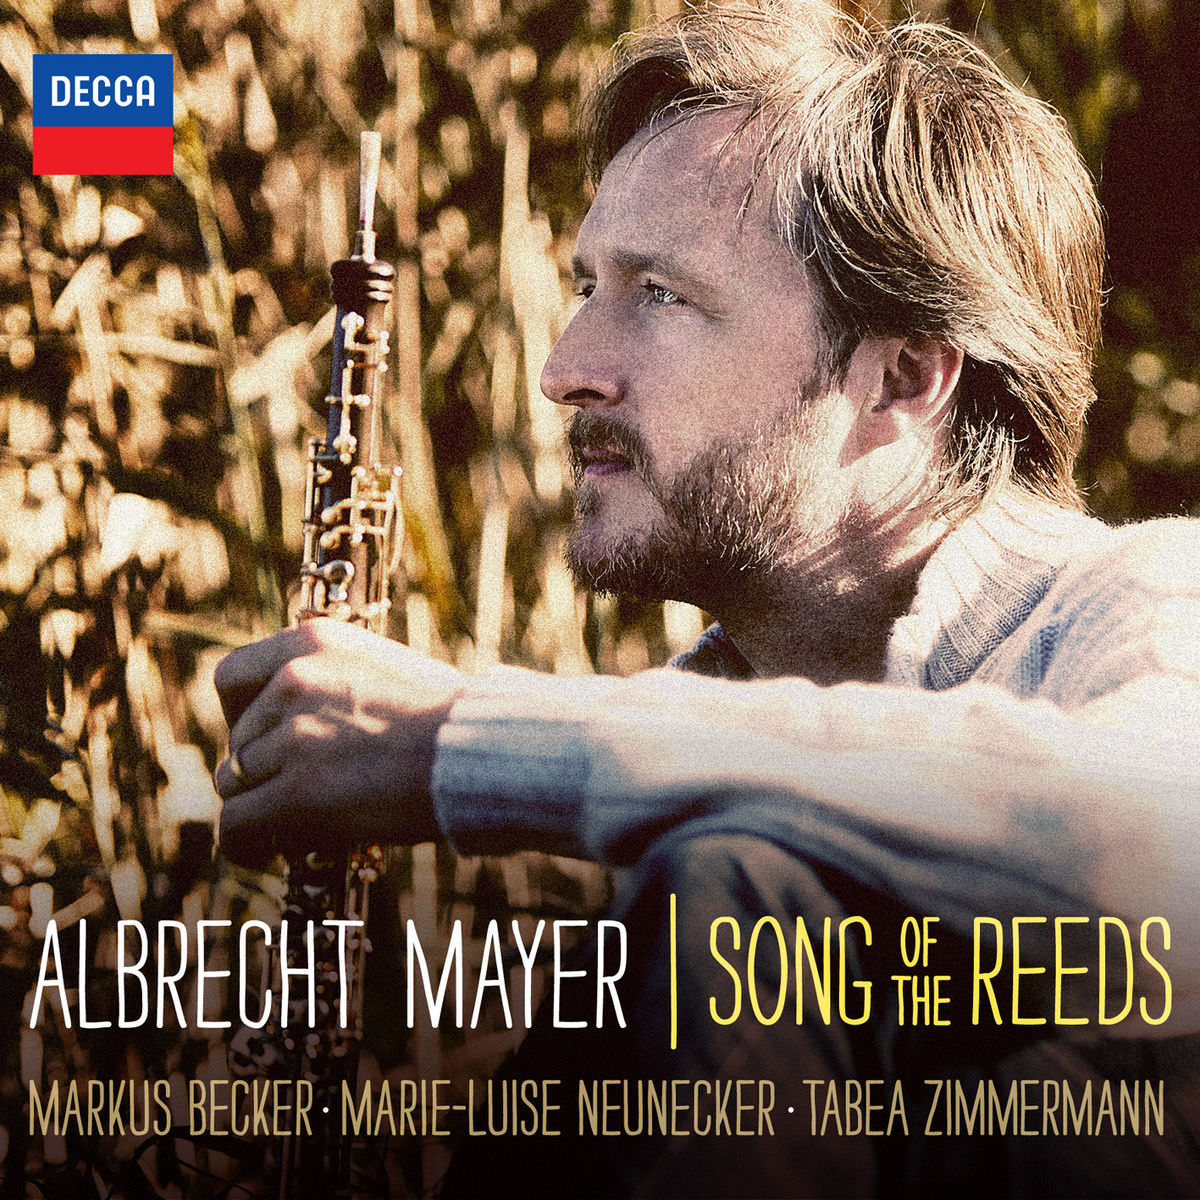 Albrecht Mayer - Albrecht Mayer Song of the Reeds (2017) [Qobuz FLAC 24bit/96kHz]